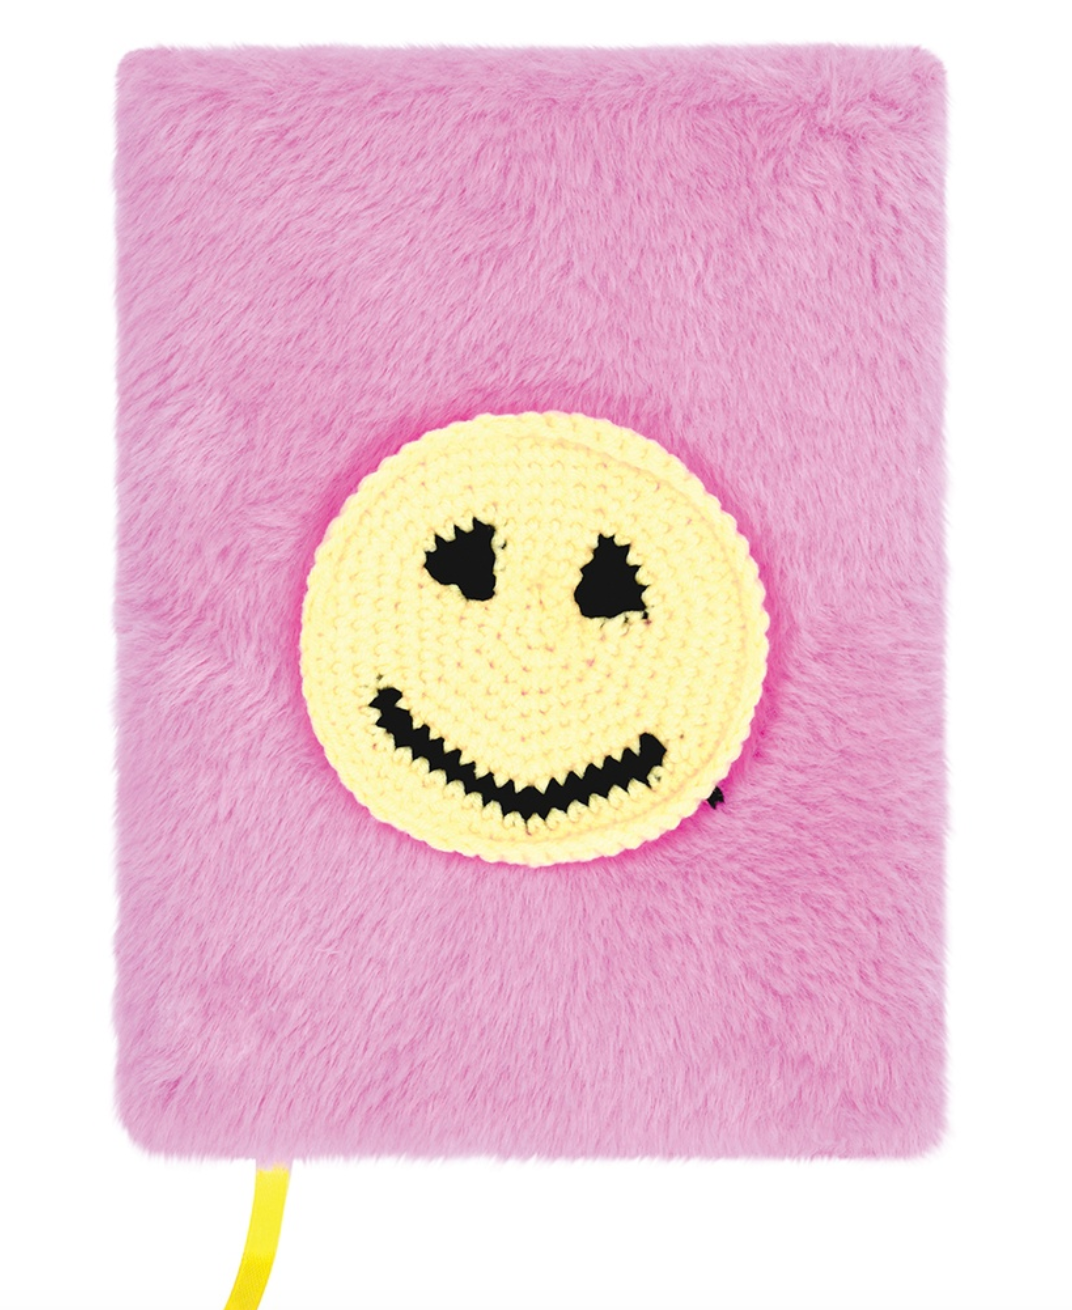 Crochet Smile Journal